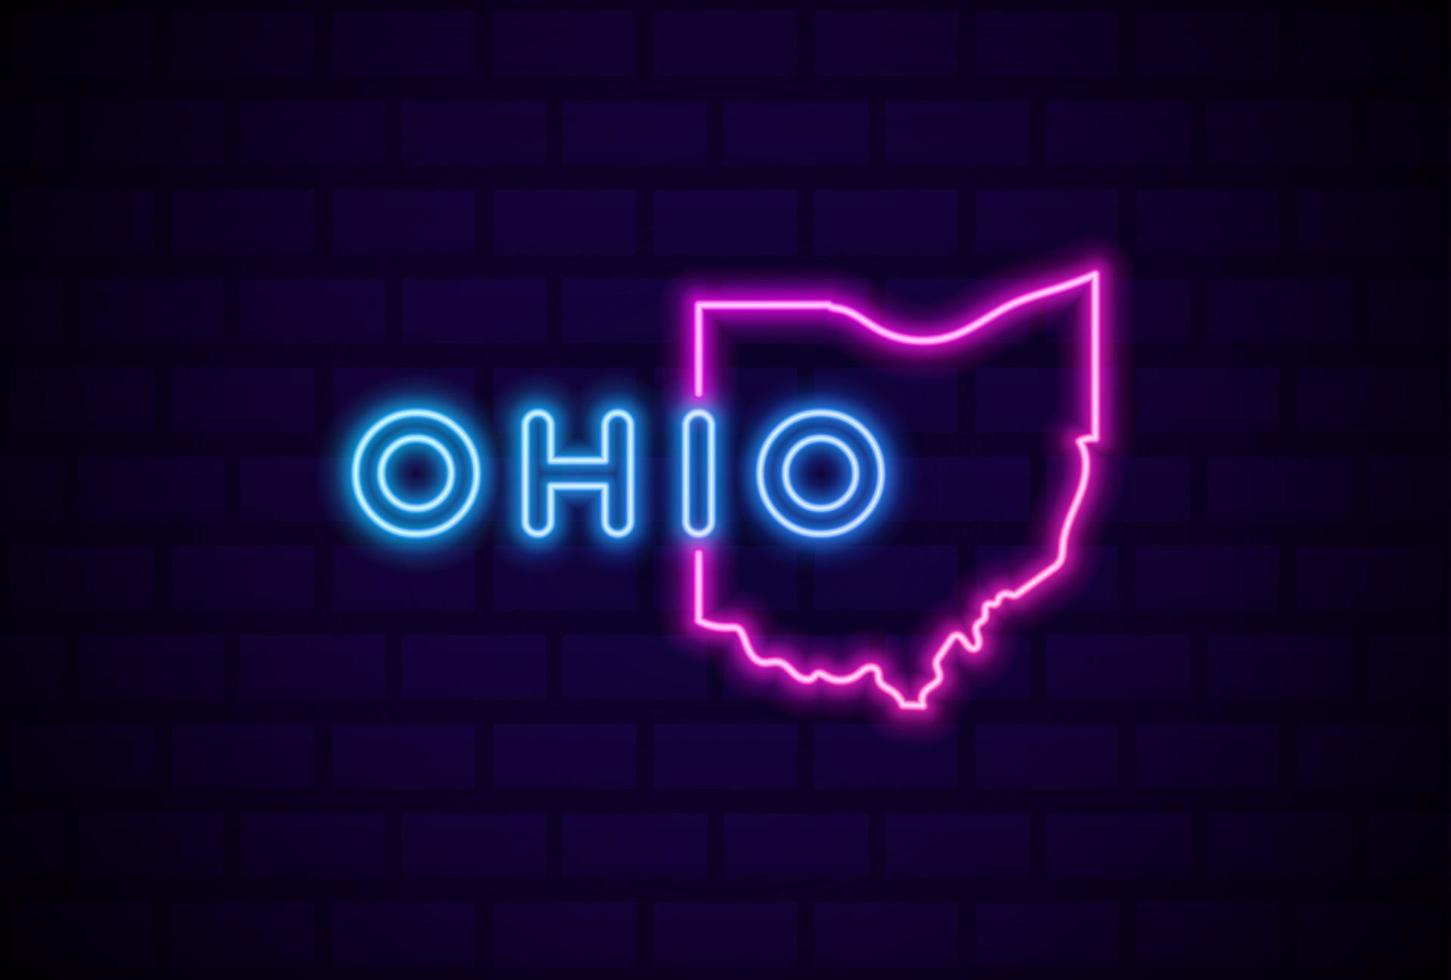 ohio stato americano lampada al neon incandescente segno illustrazione vettoriale realistico bagliore blu muro di mattoni